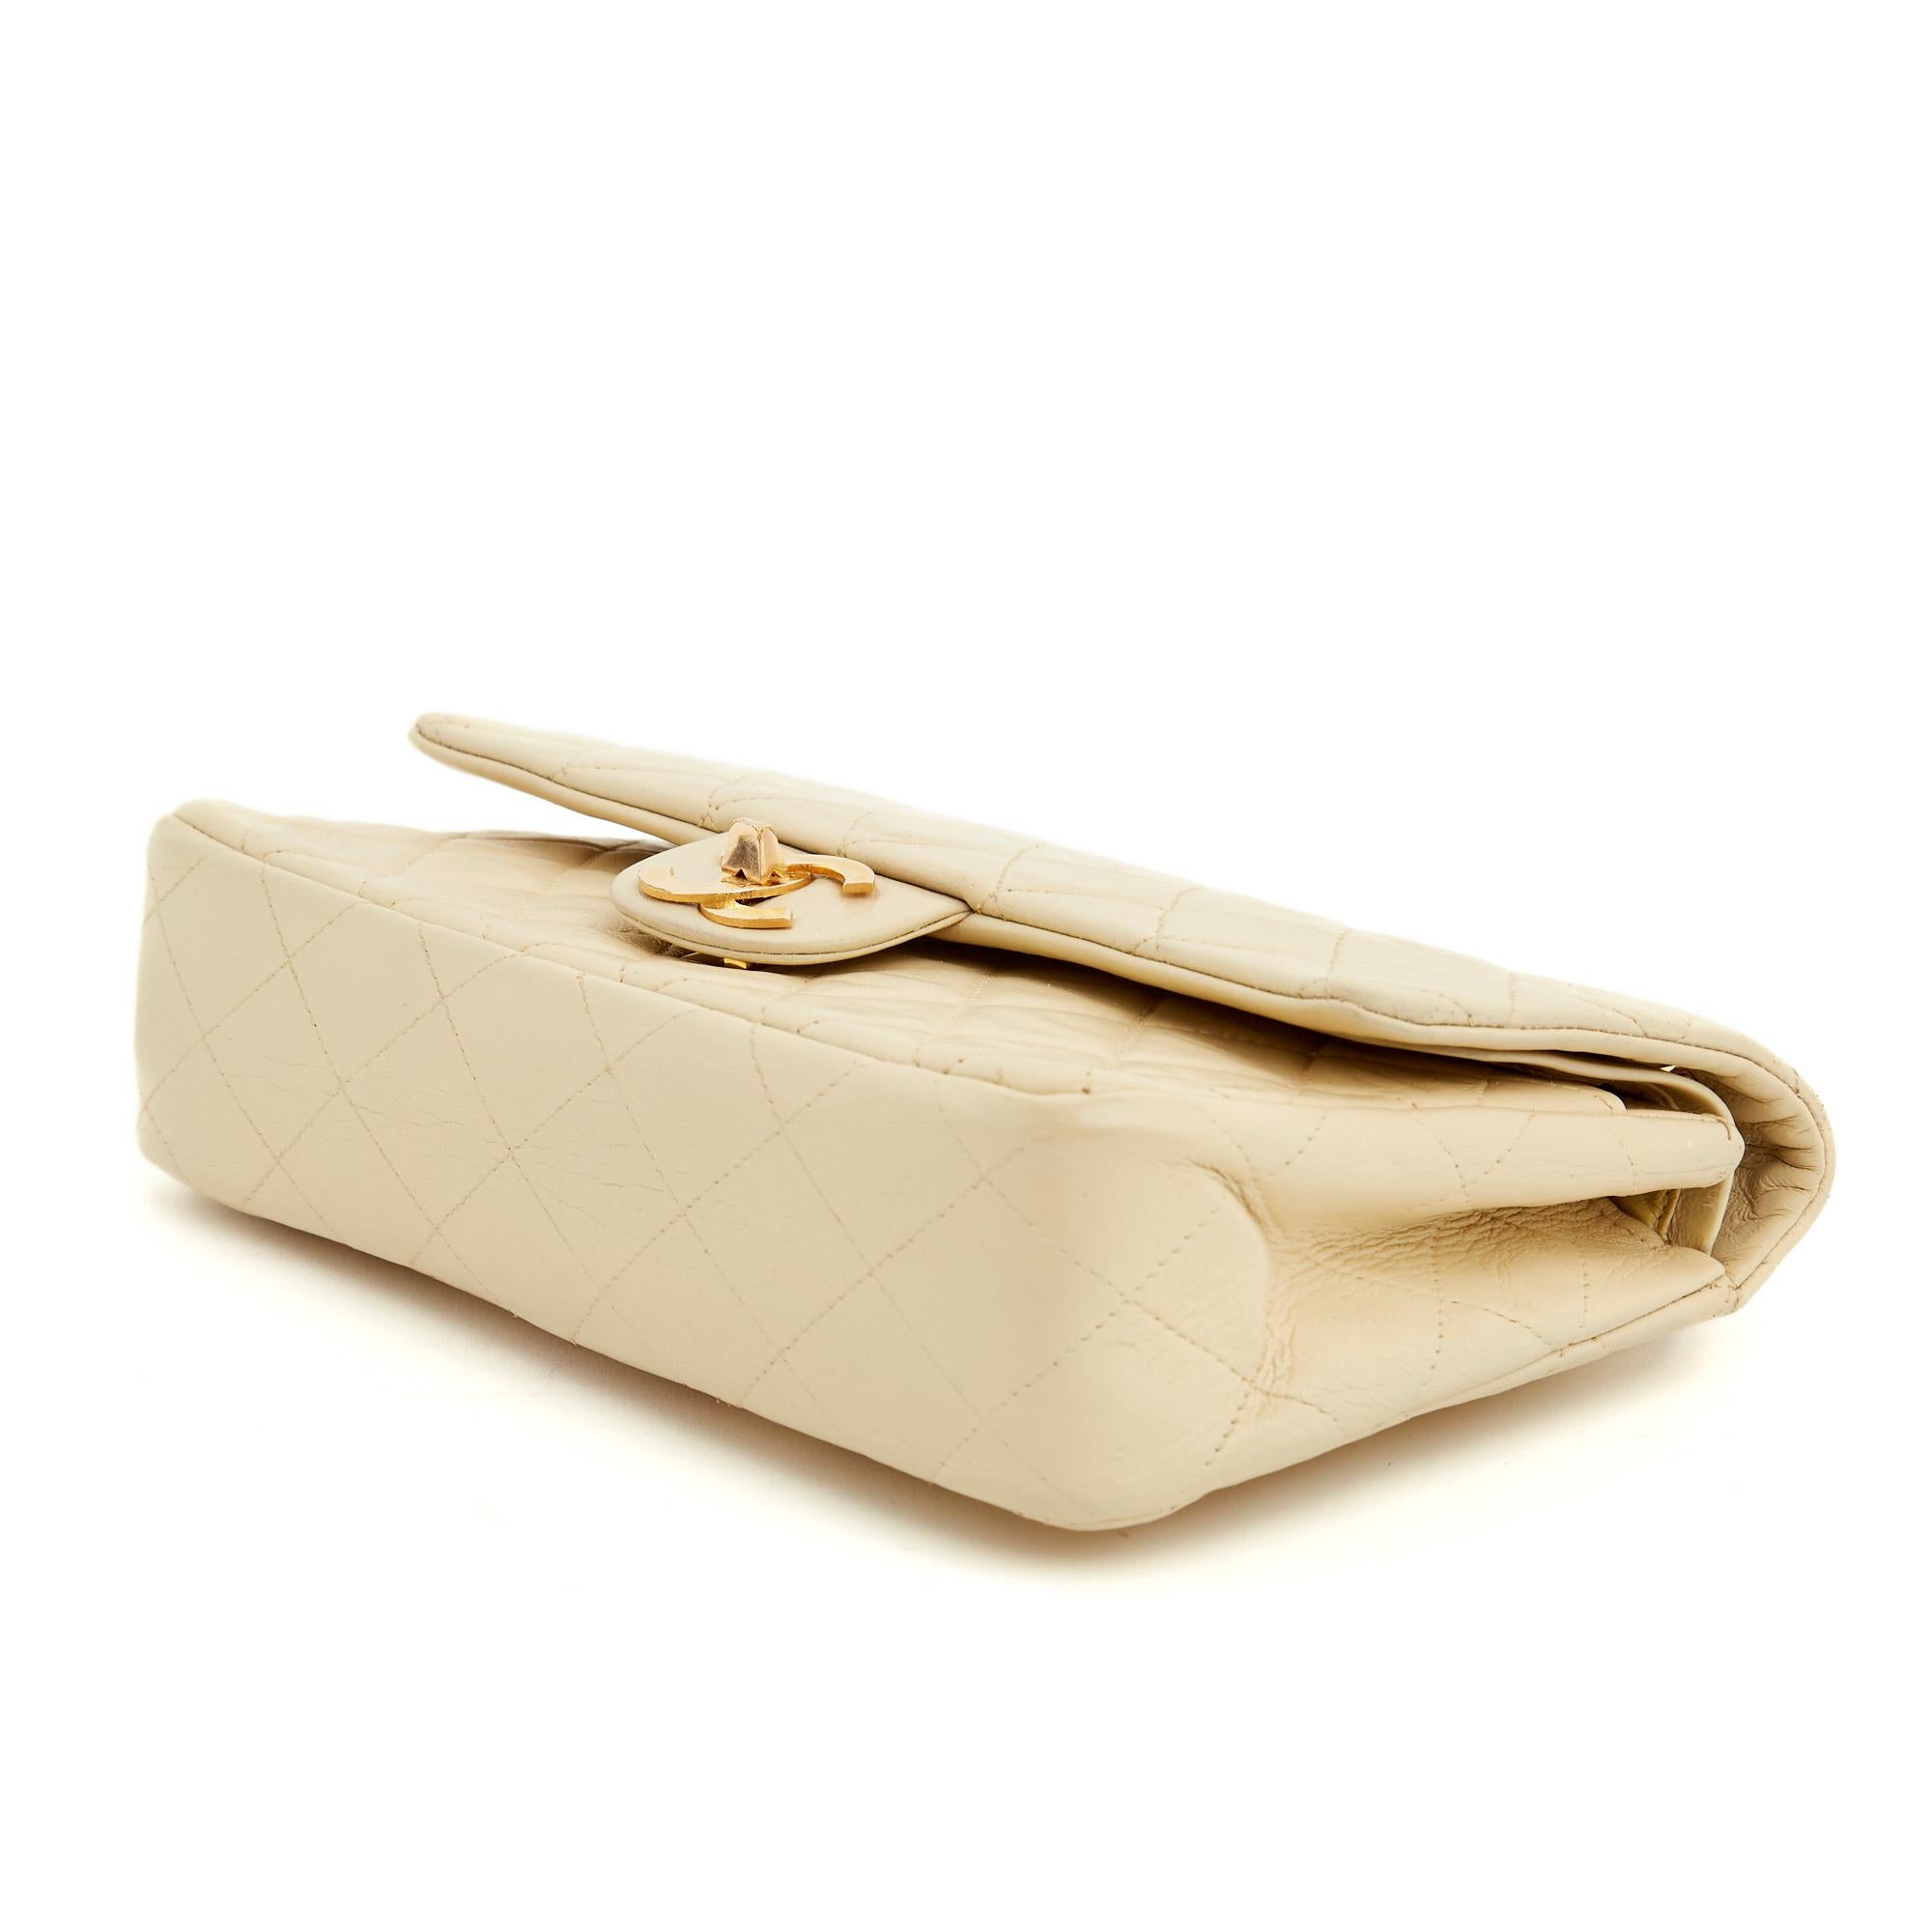 Chanel Sac Classique Timeless Bag double flap vanilla vintage 2